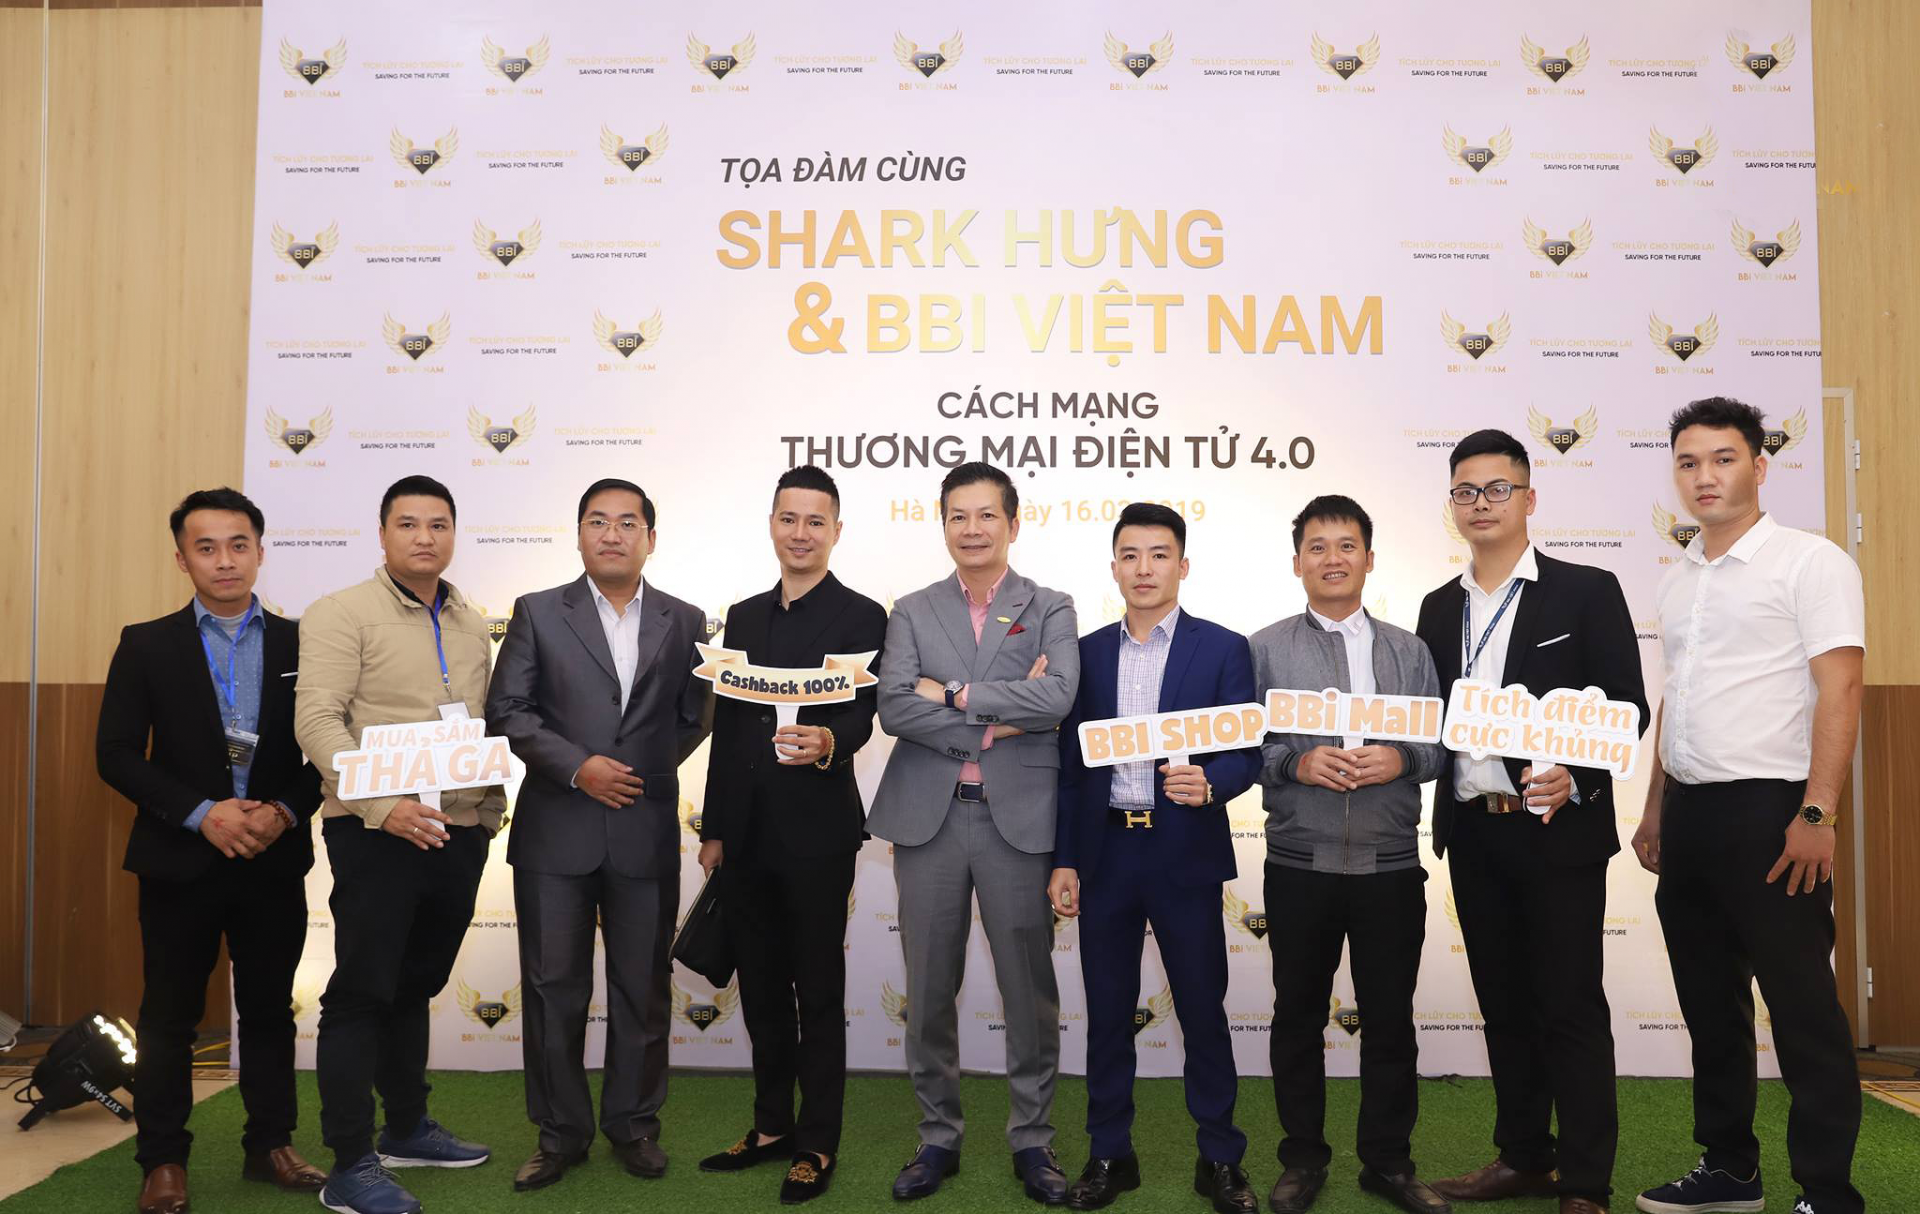 BBI Việt Nam đáp trả nghi vấn kinh doanh đa cấp, "người nhà" của Shark Hưng